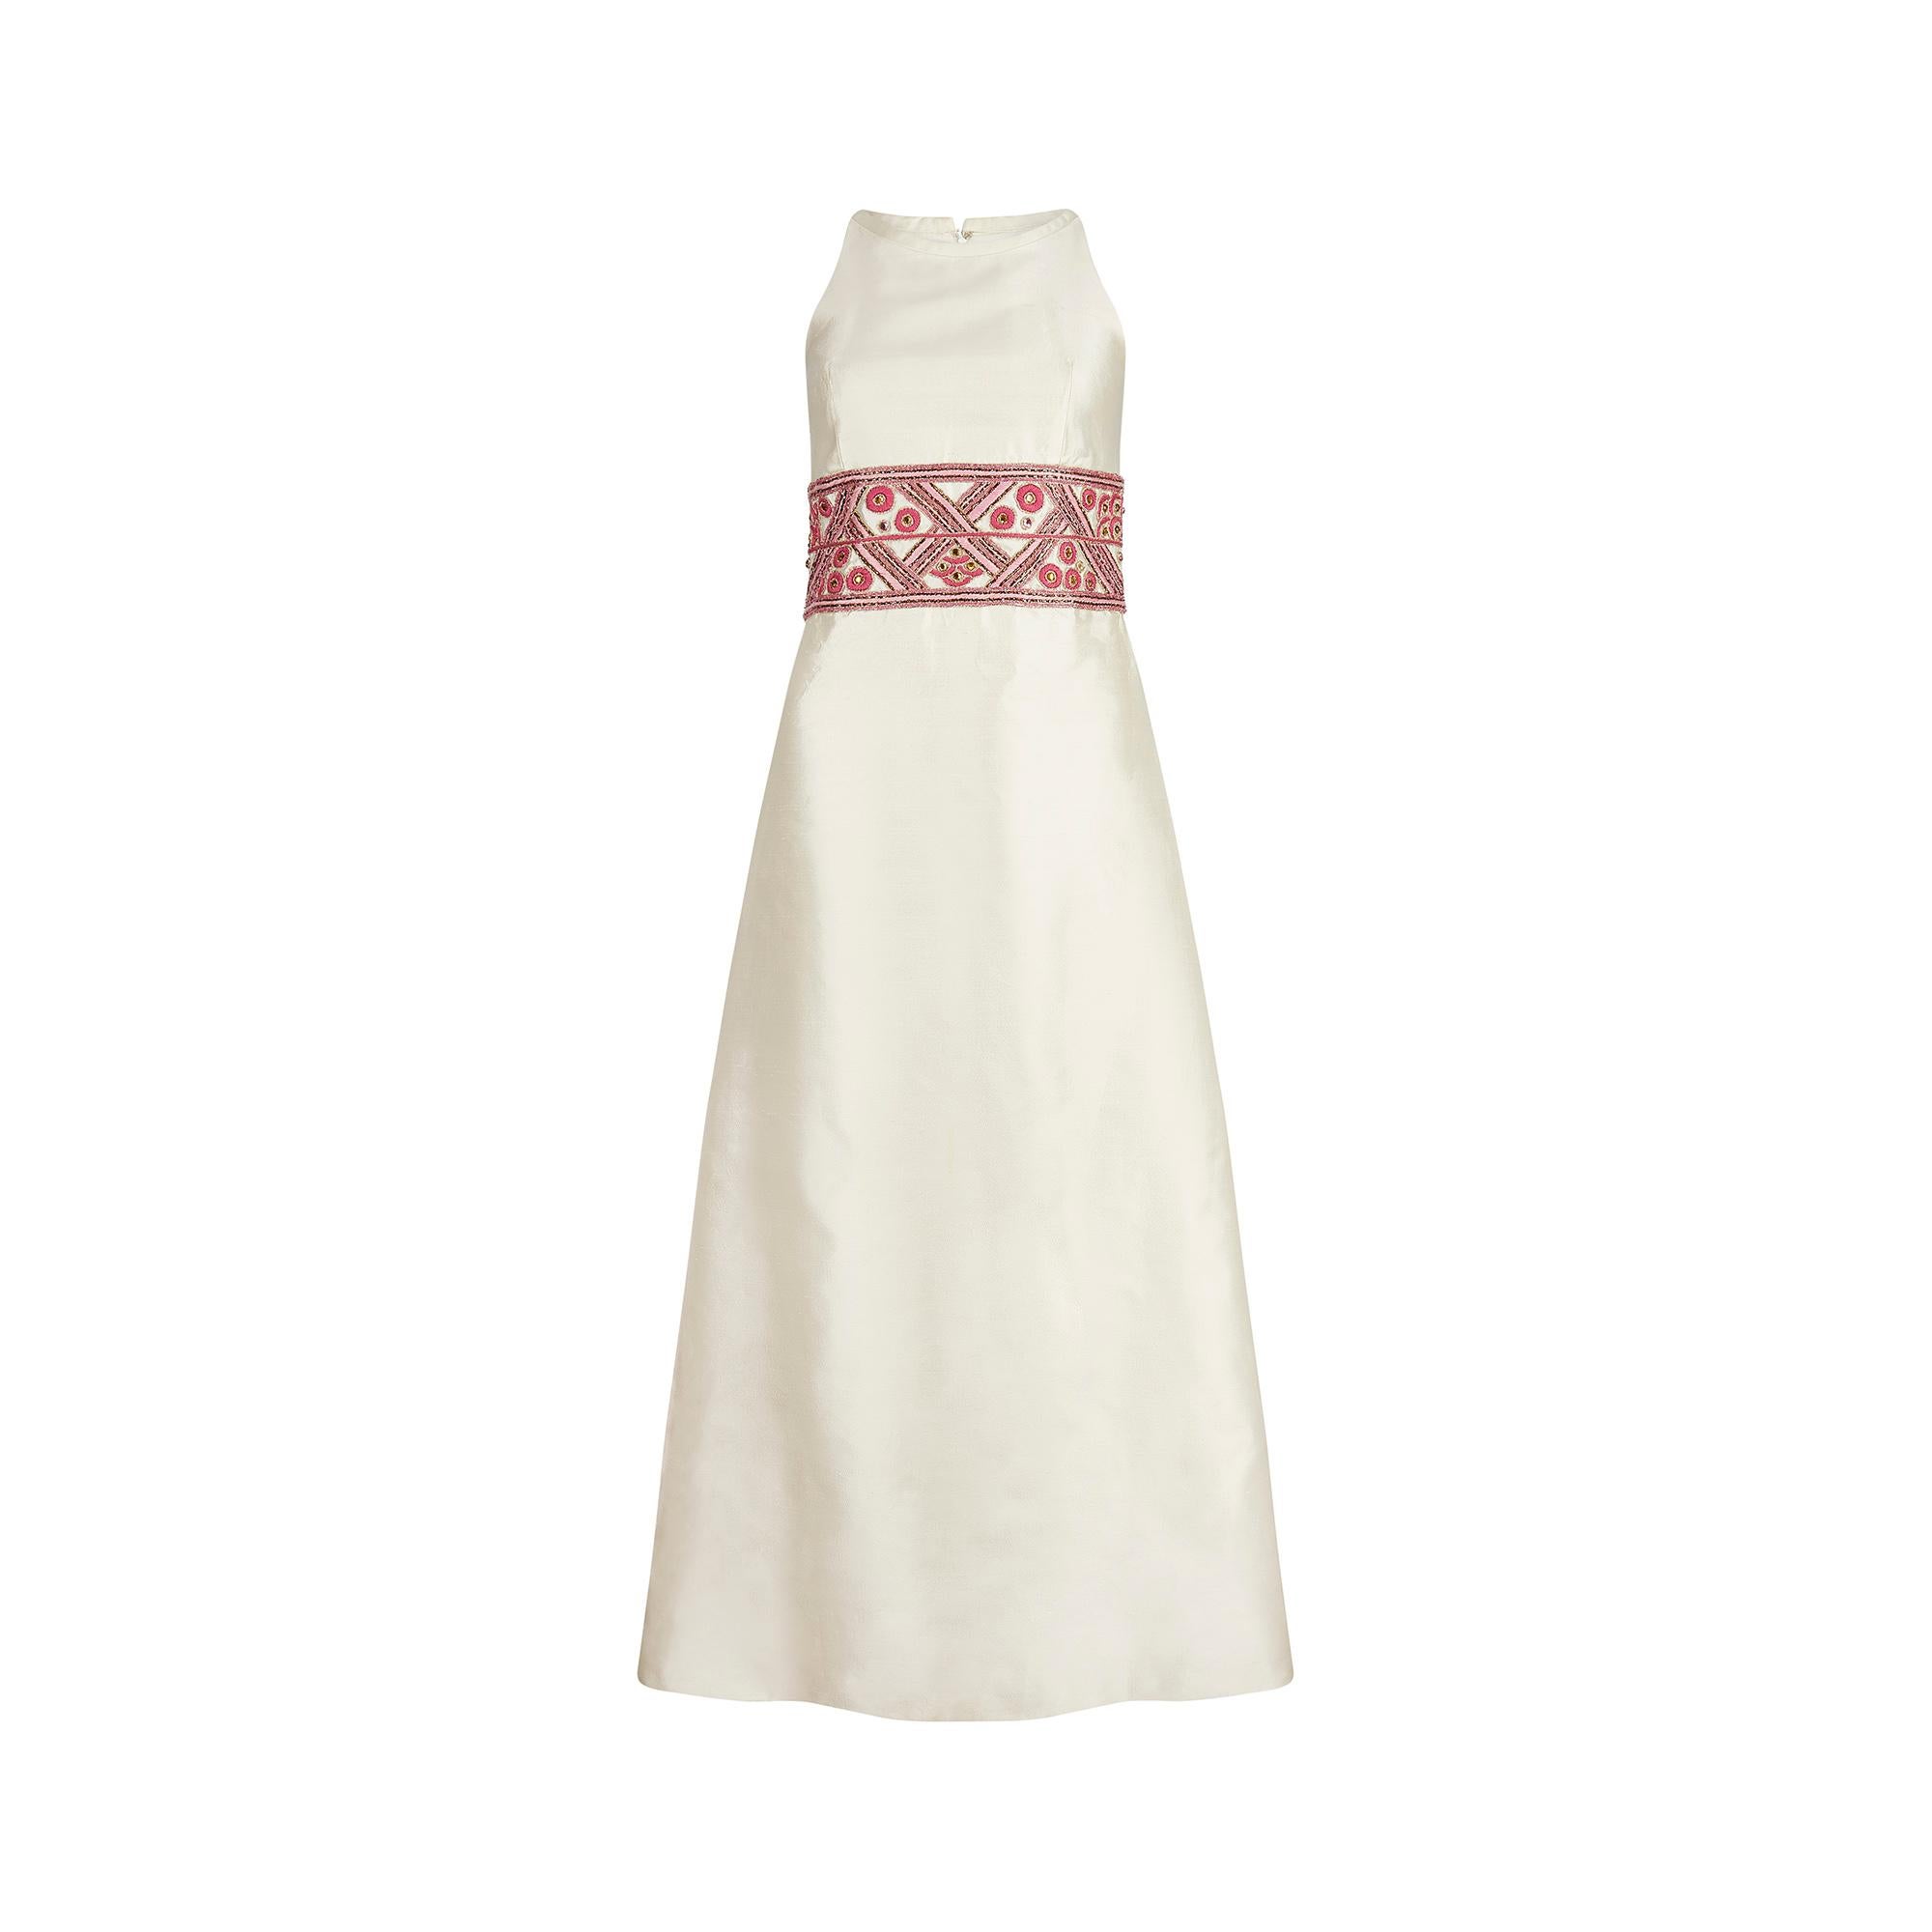 Contessa-Abendkleid aus den 1960er Jahren aus schöner cremefarbener Seide mit einem bestickten geometrischen Bund. Das Kleid hat einen hohen Halsausschnitt und einen bodenlangen A-Linien-Rock.  Die Gazar-Seide hat eine wunderbare Dicke und Struktur